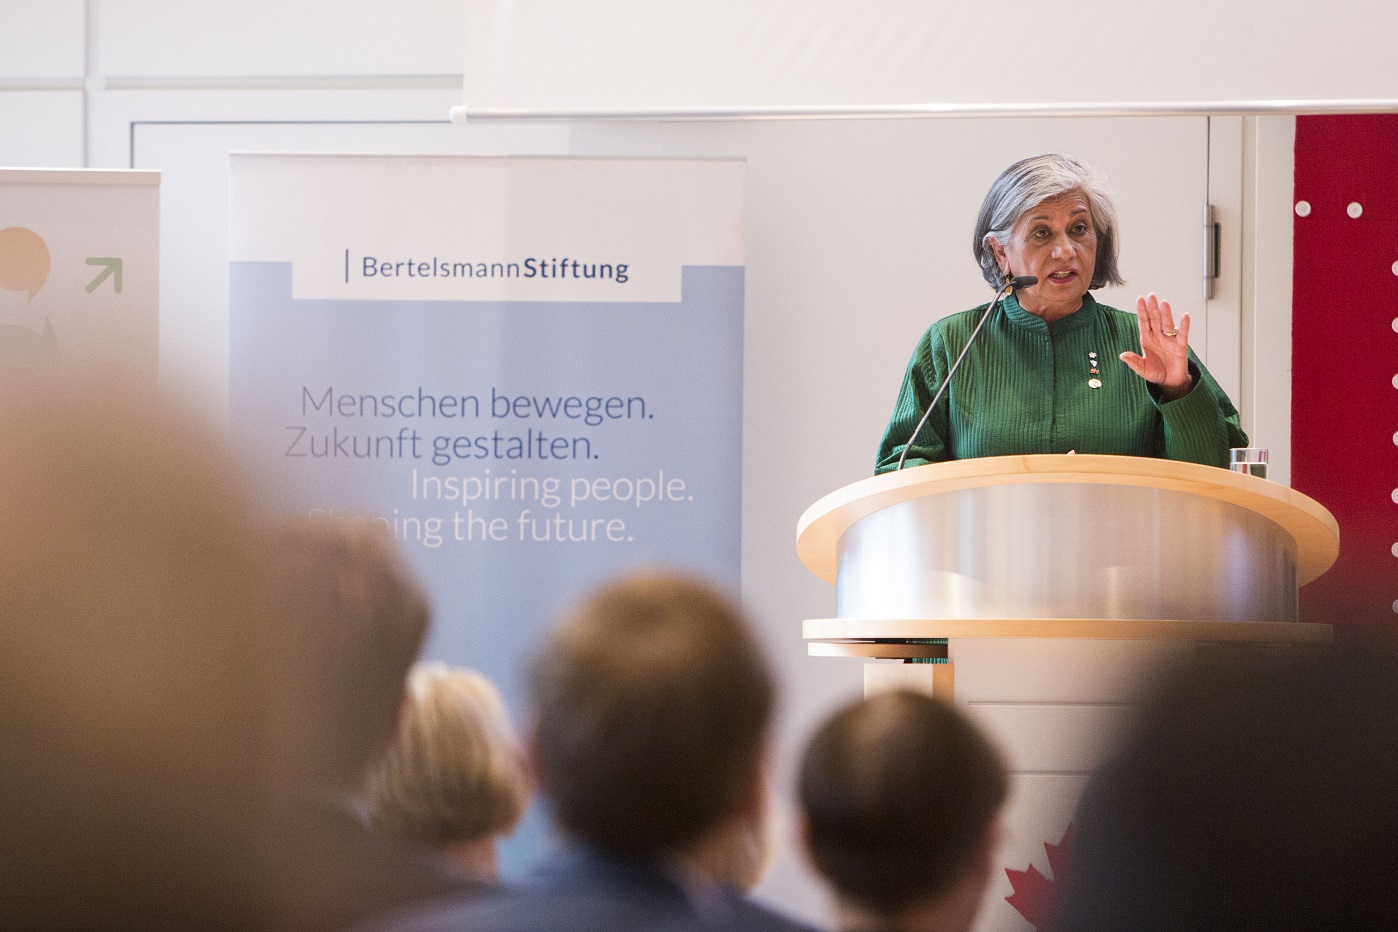 La sénatrice Ratna Omidvar présente les éléments clés du multiculturalisme au cours de sa présentation intitulée « Eux et nous : la différence, la diversité et un monde de différence » qu’elle a donné à Berlin le 26 avril 2017, à l’ambassade du Canada en Allemagne.